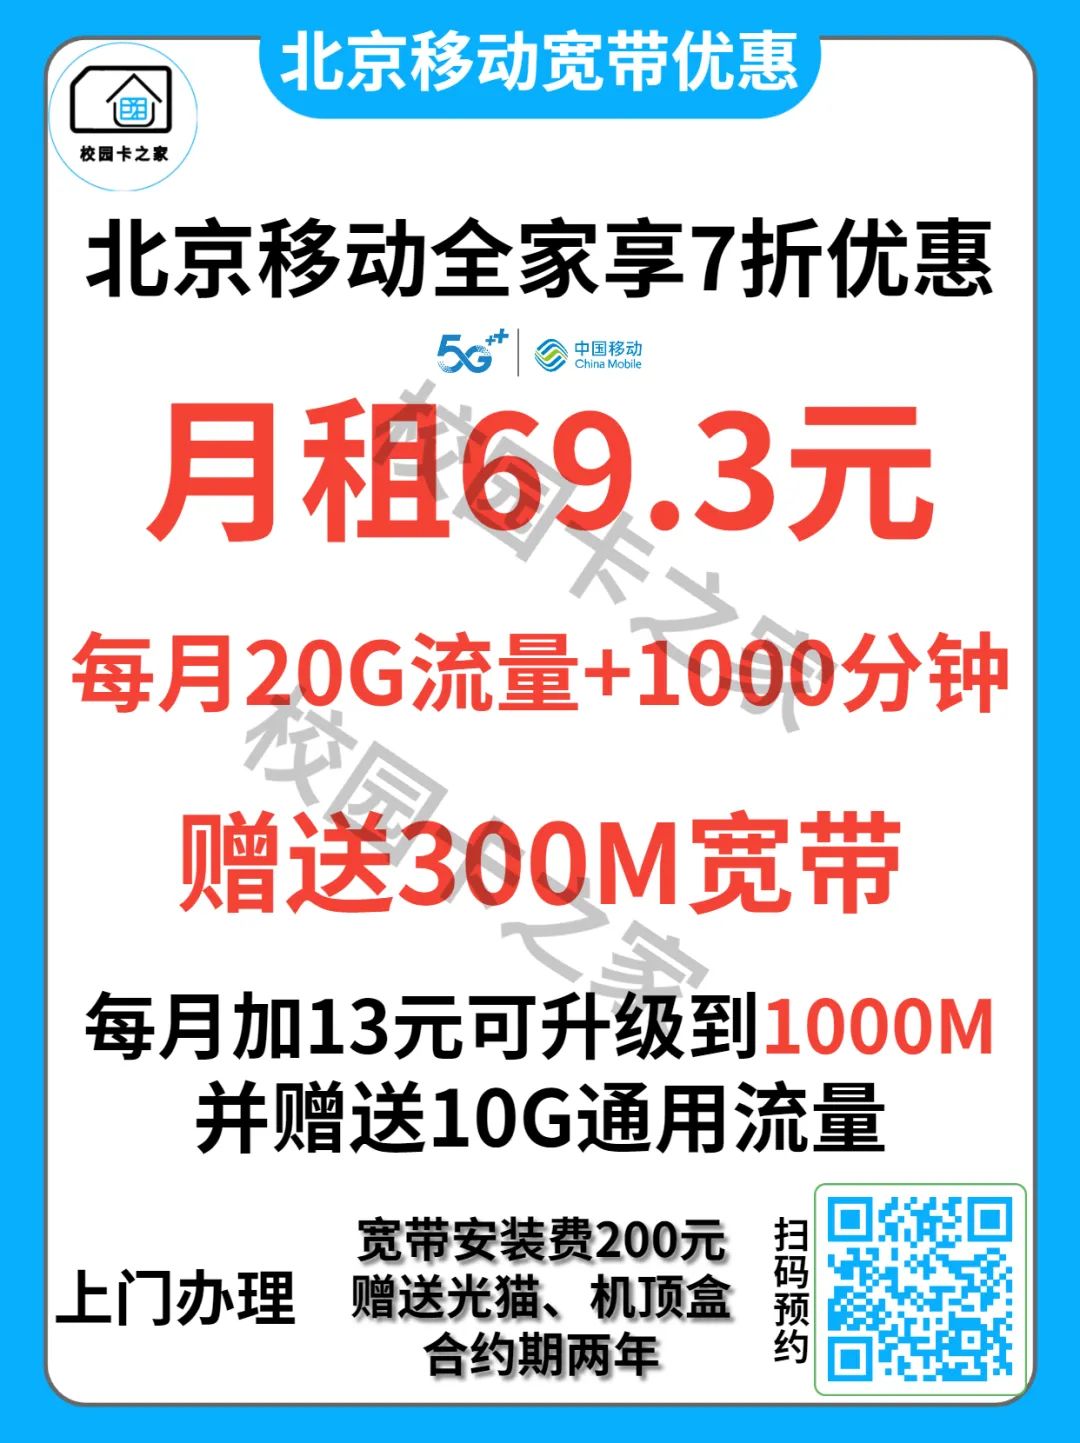 2023年4月北京移动电信联通宽带优惠活动汇总套餐价格一览表插图5